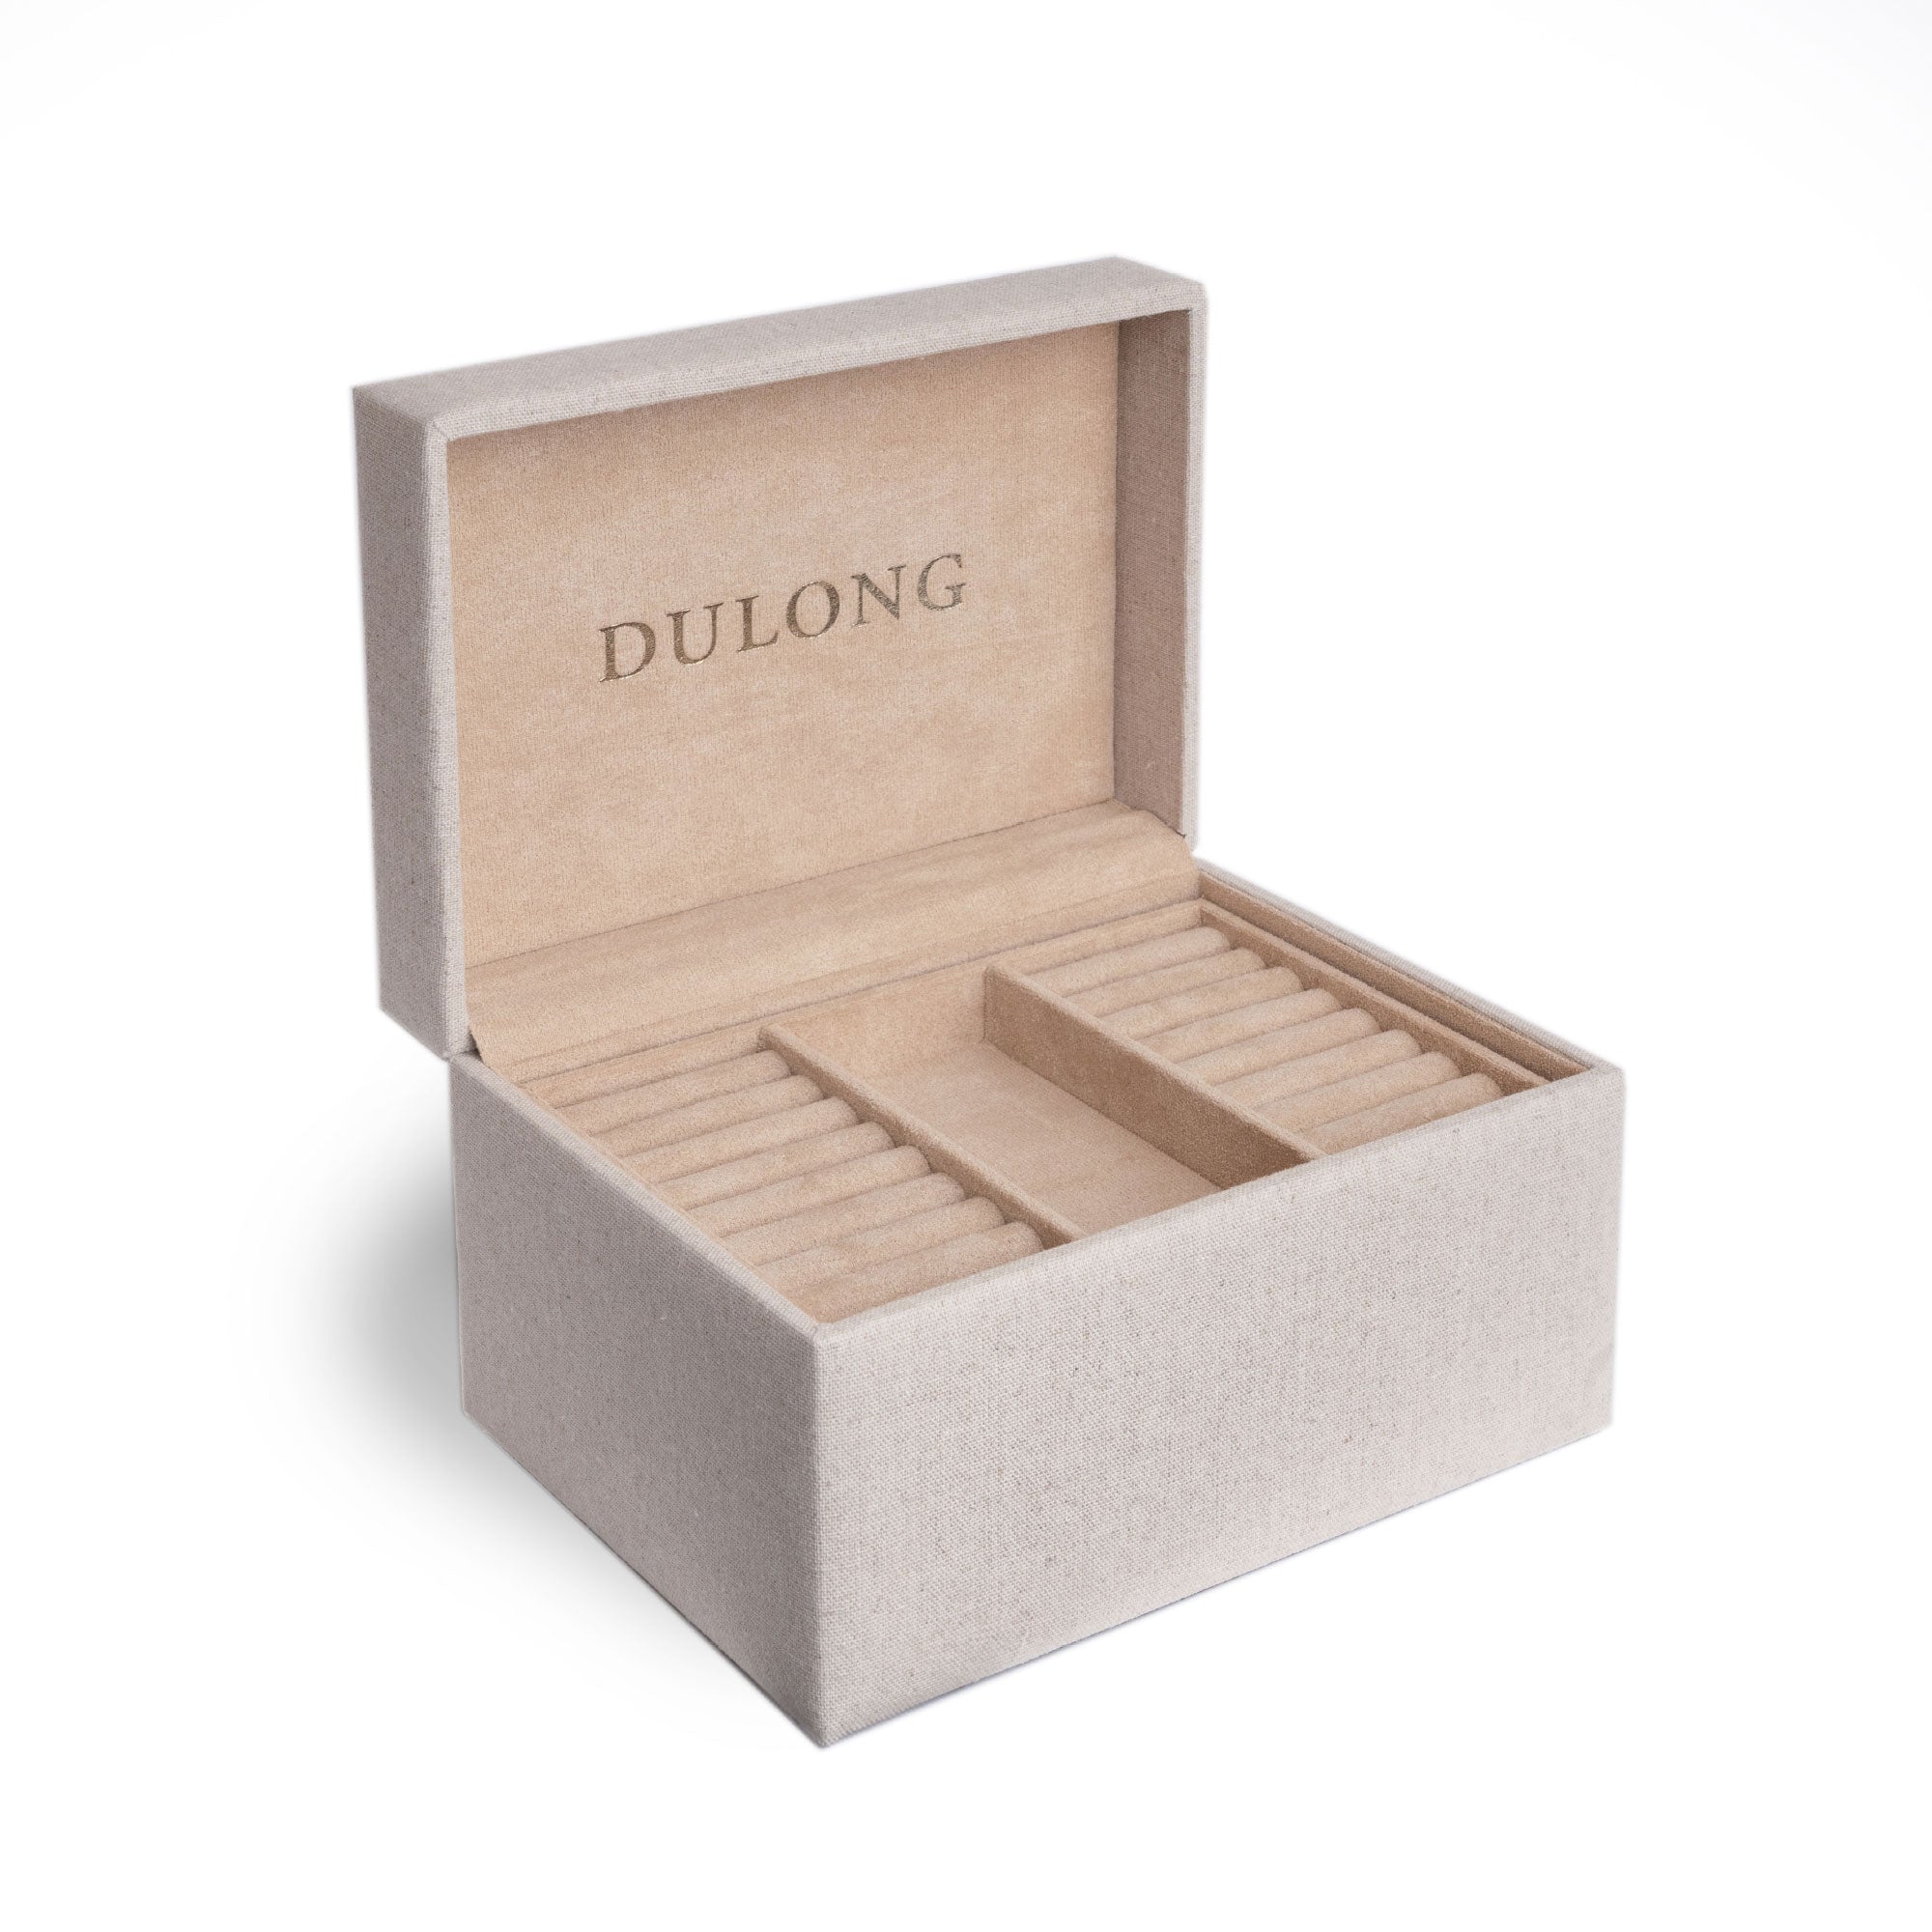 Dulong smykkeskrin - Linen fra Dulong Fine Jewelry